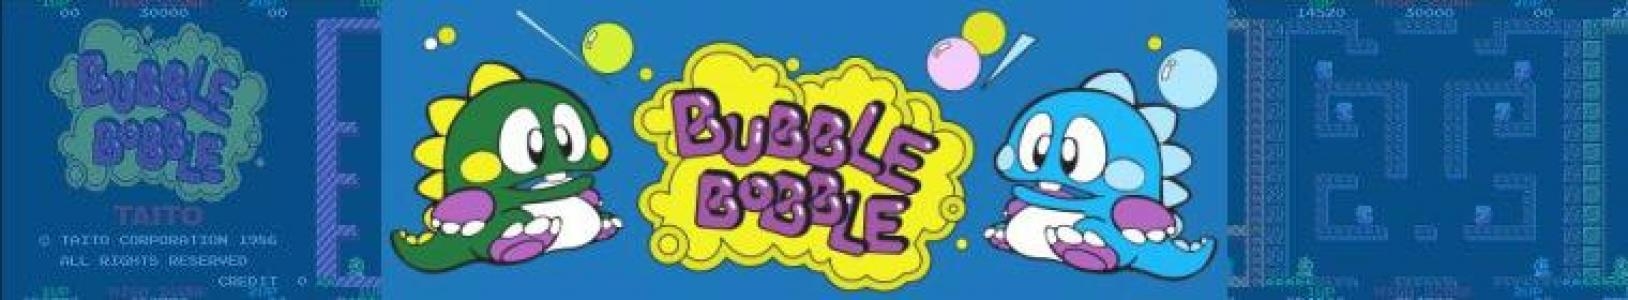 Bubble Bobble banner